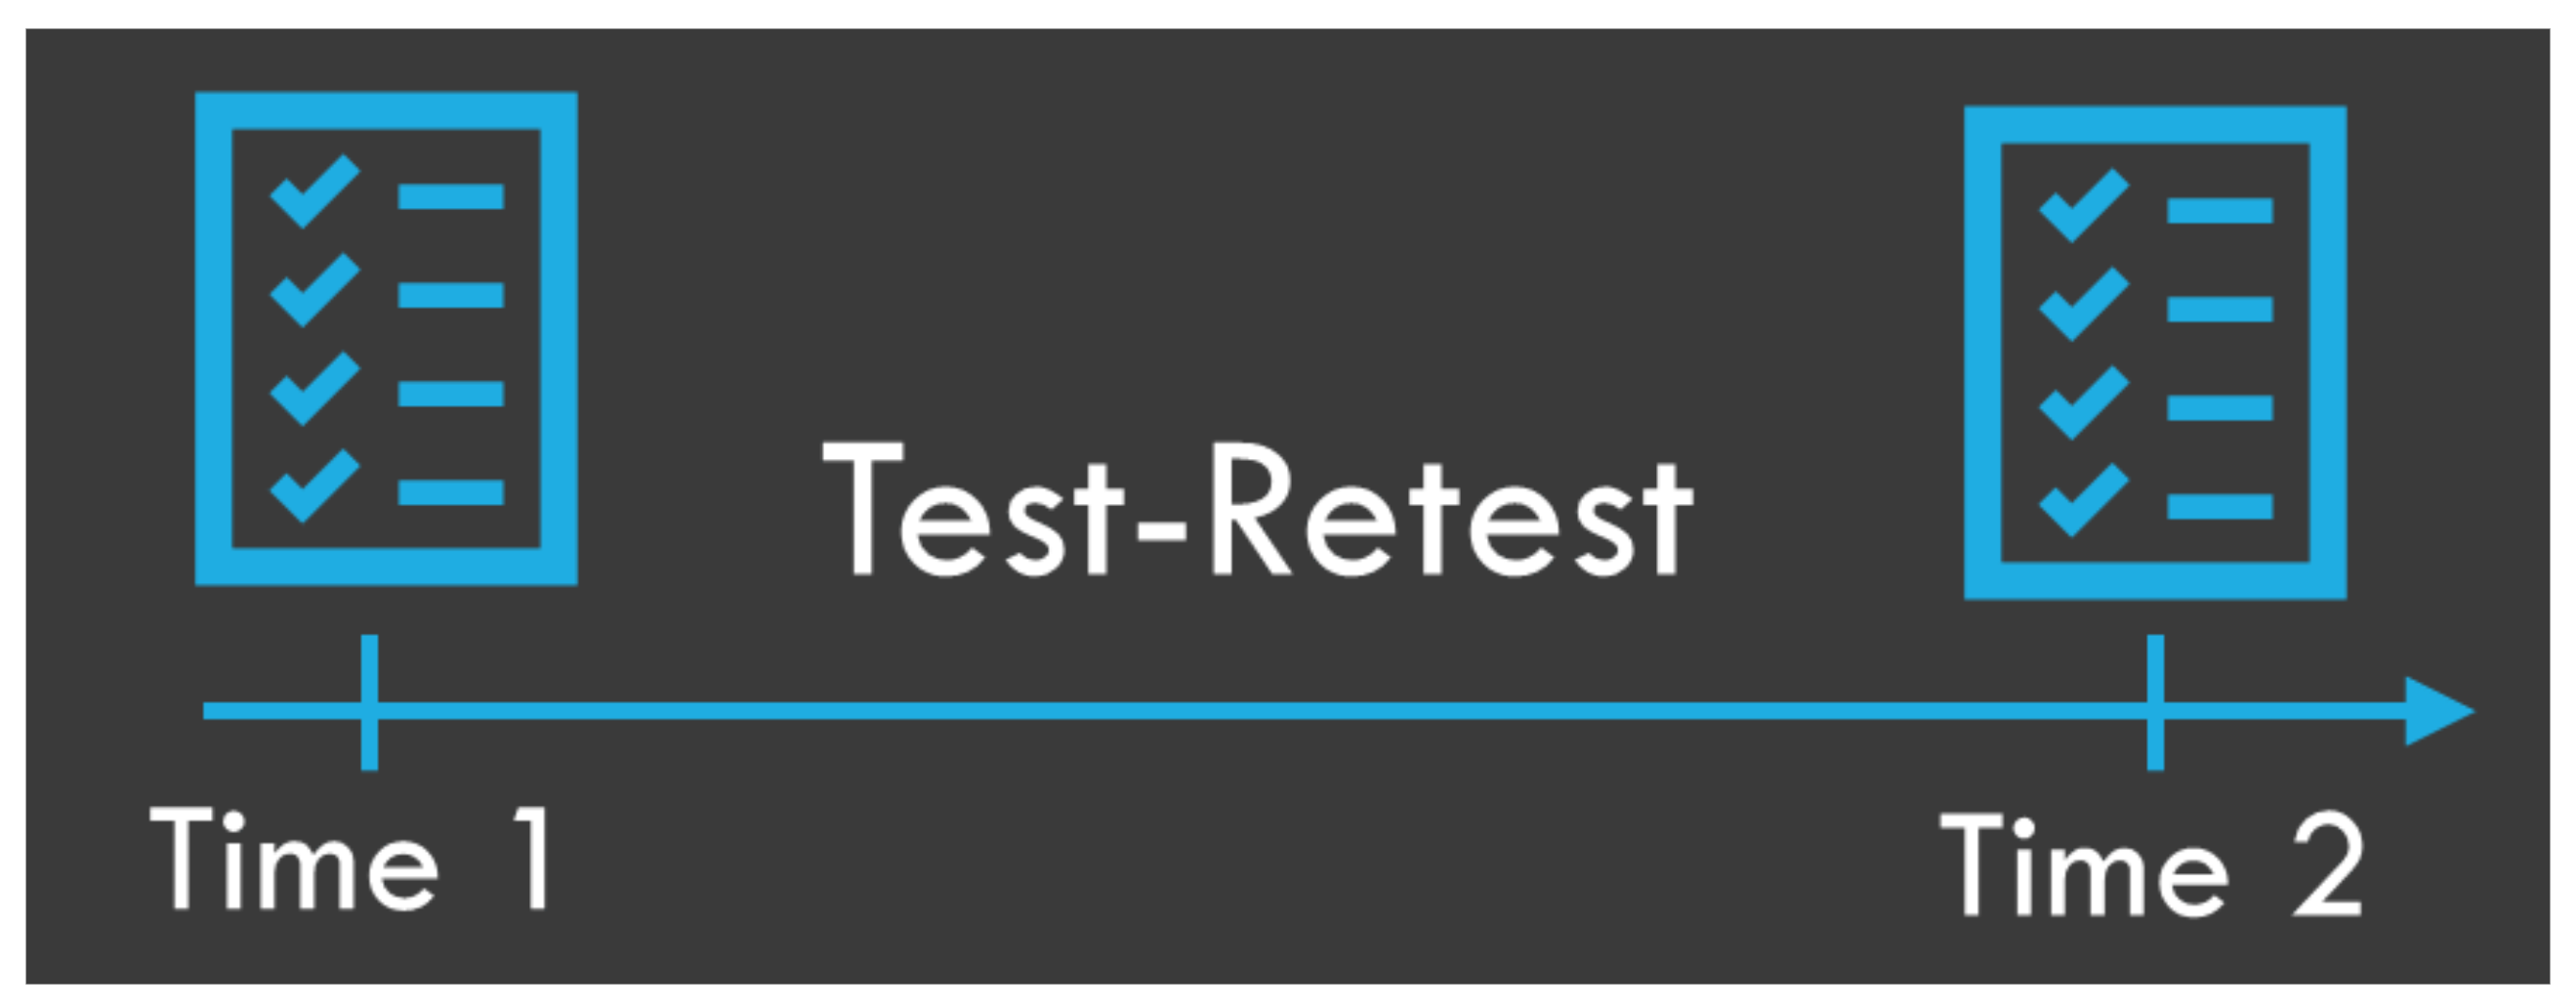 Test-Retest Reliability